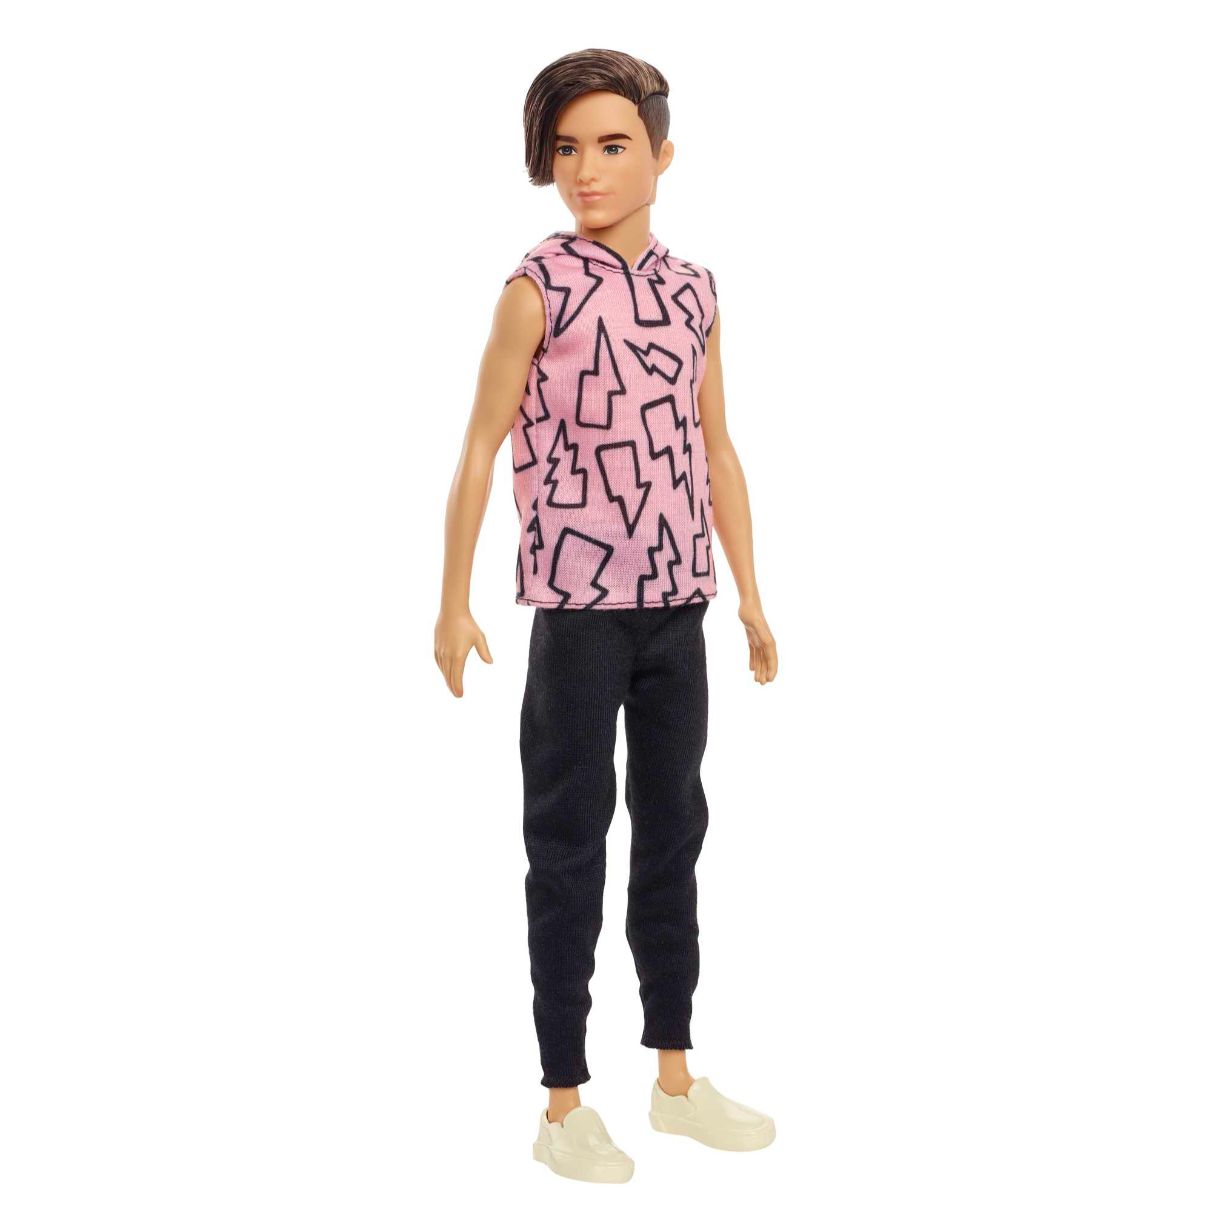 barbie ken fashionista camiseta rayos con pelo enraizado muñeco moreno con pantalones largos, juguete a la moda +3 años (mattel 